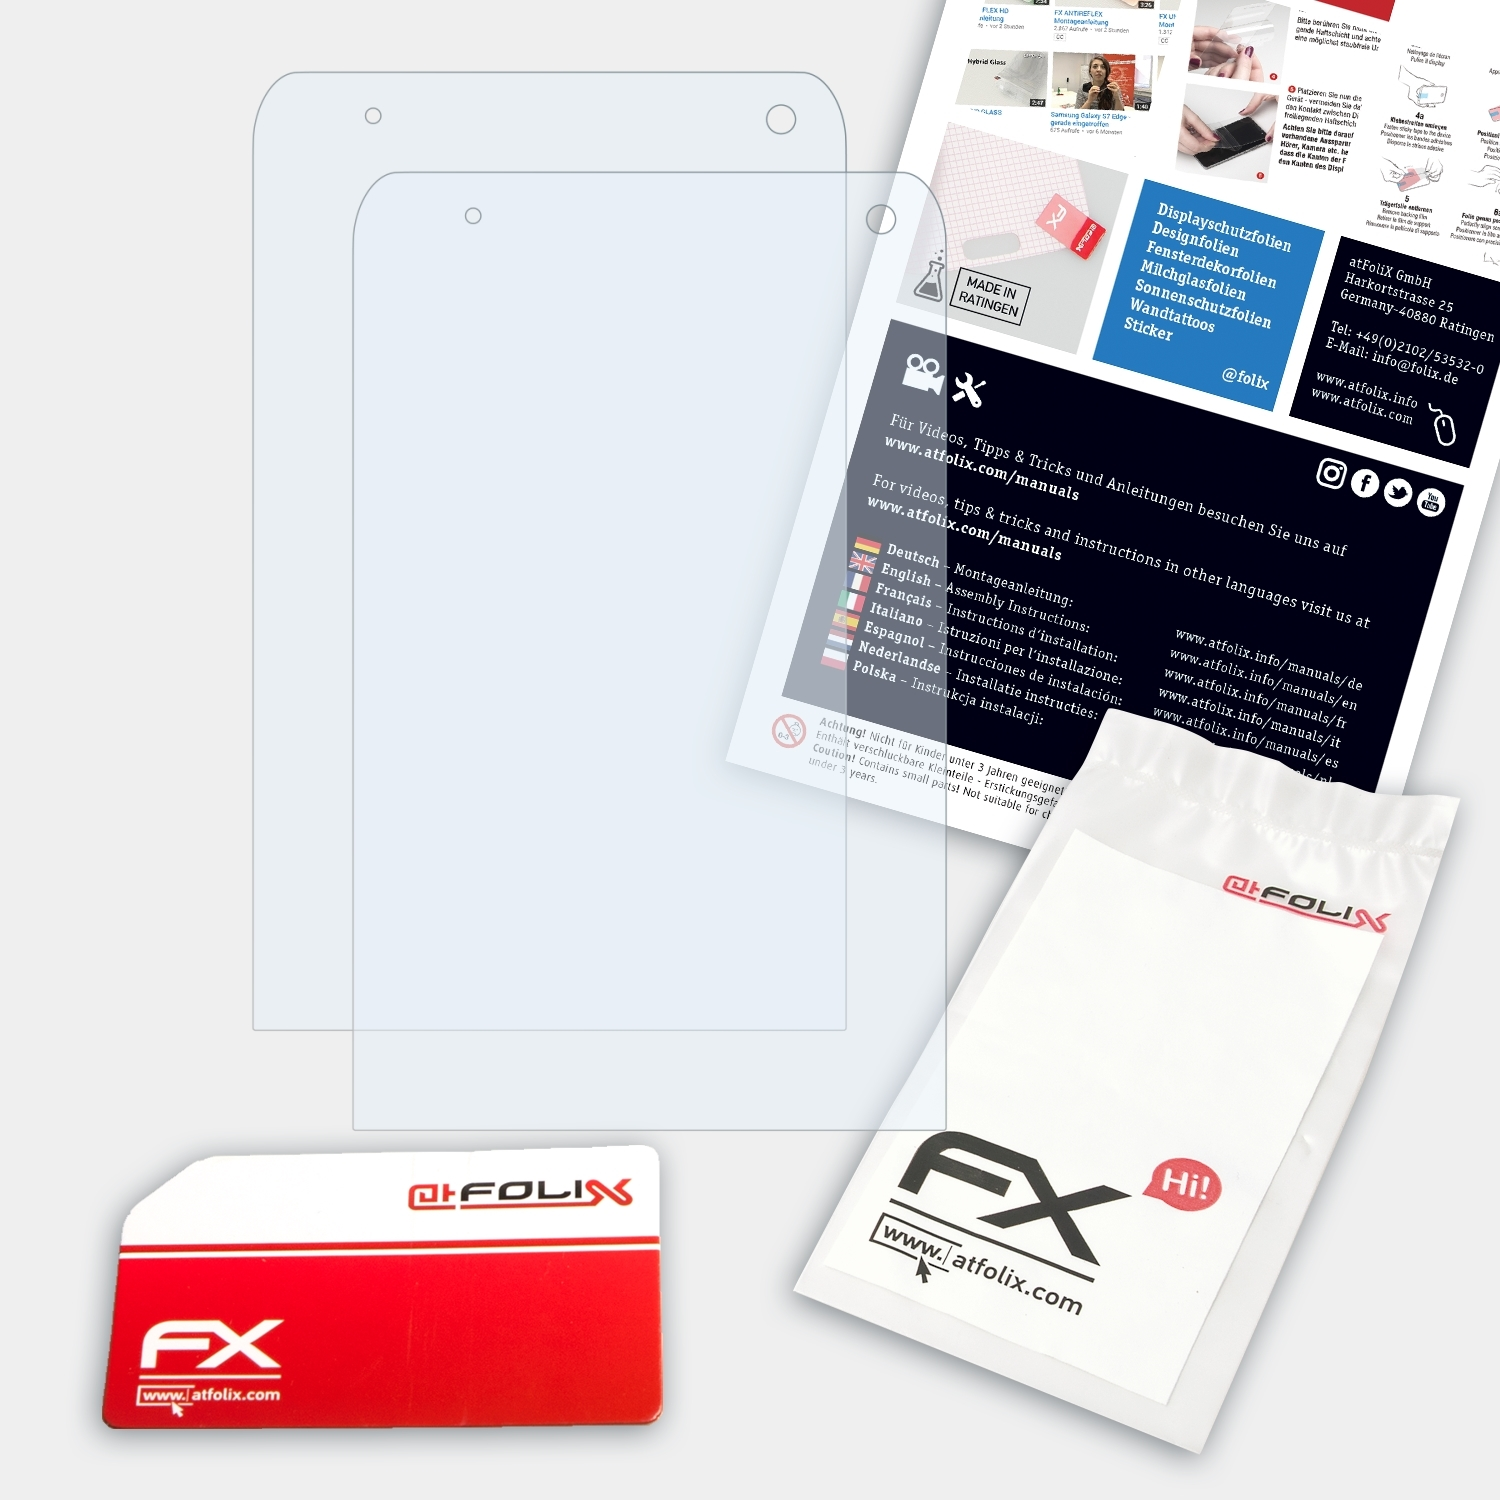 Algiz FX-Clear RT8) 2x ATFOLIX Displayschutz(für Handheld